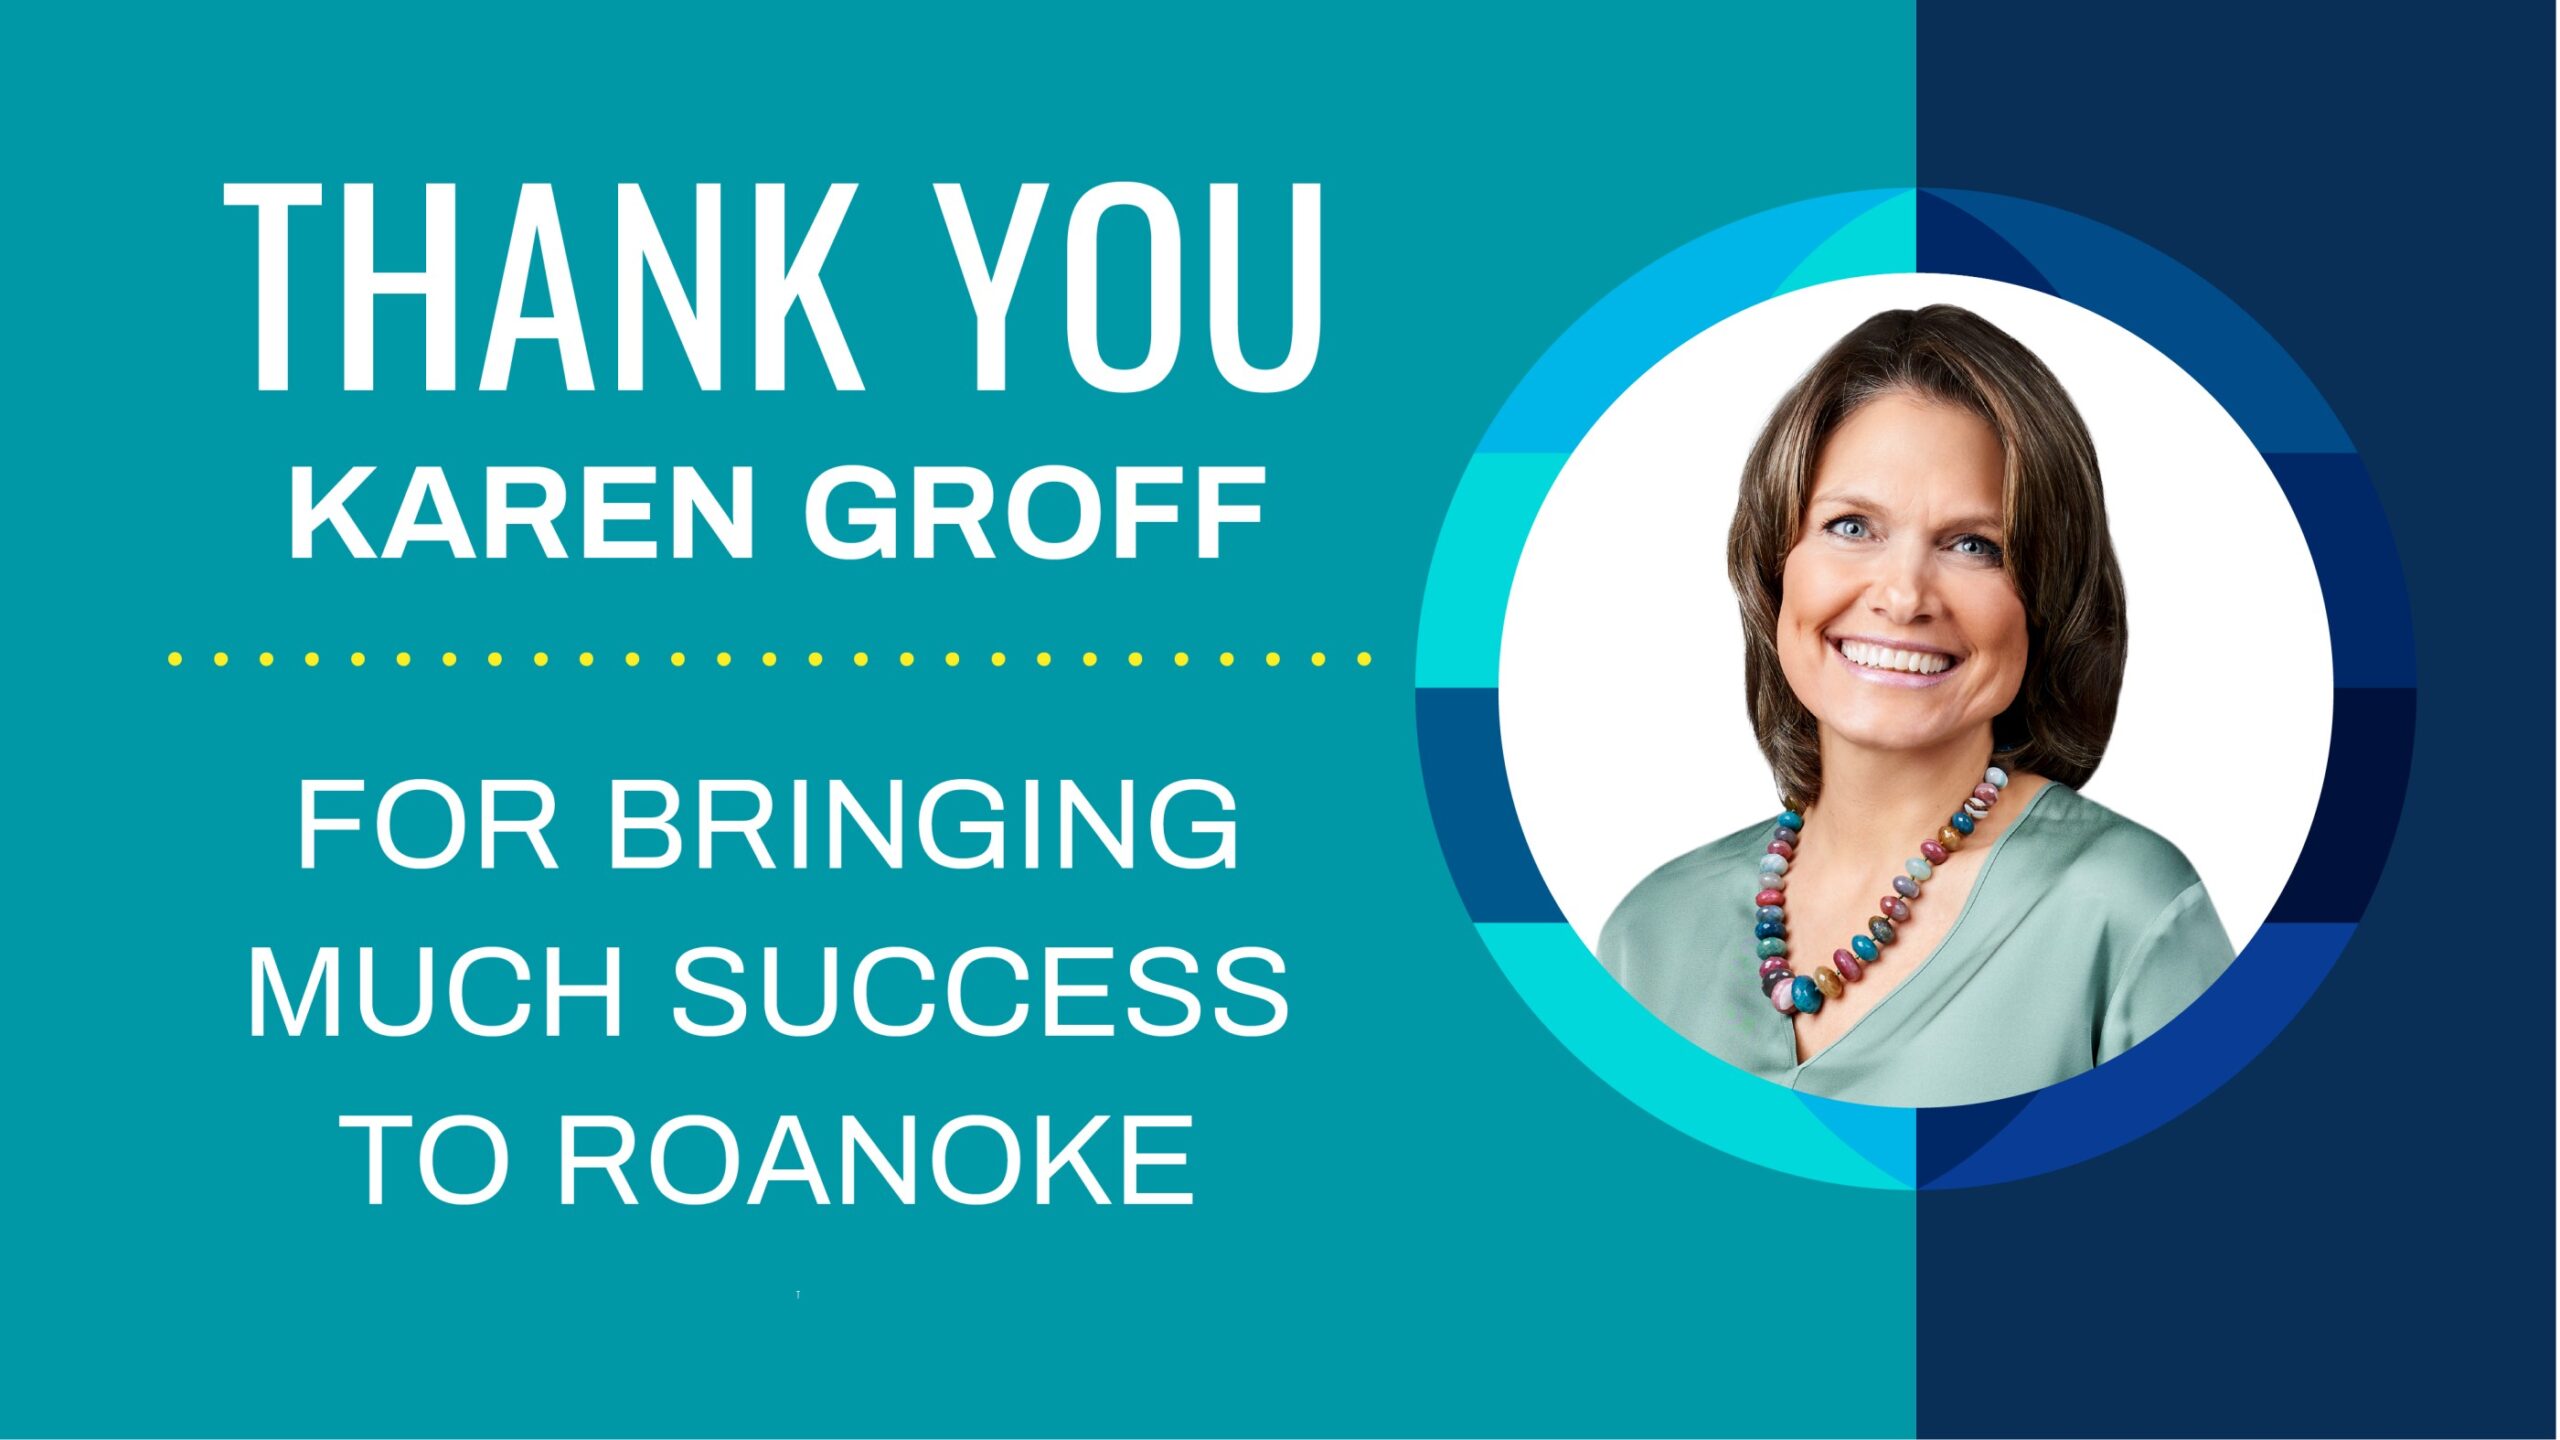 Karen Groff, President Roanoke Insurance Group Inc.